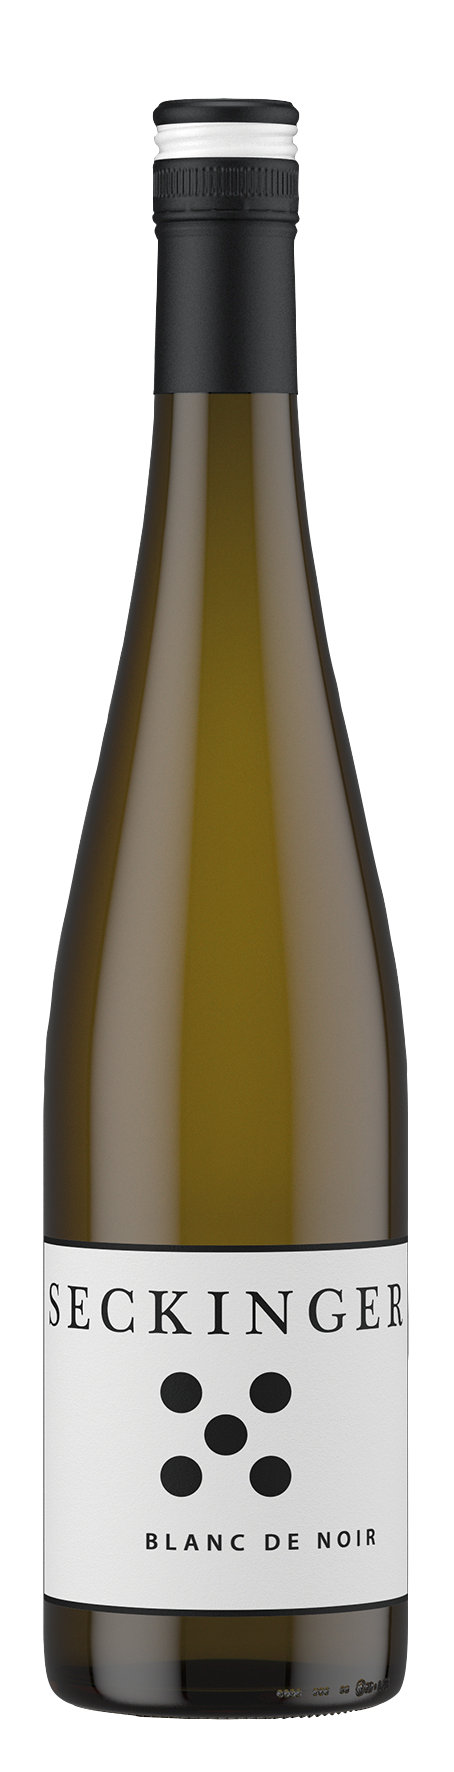 Pinot Blanc de Noir Qualitätswein trocken